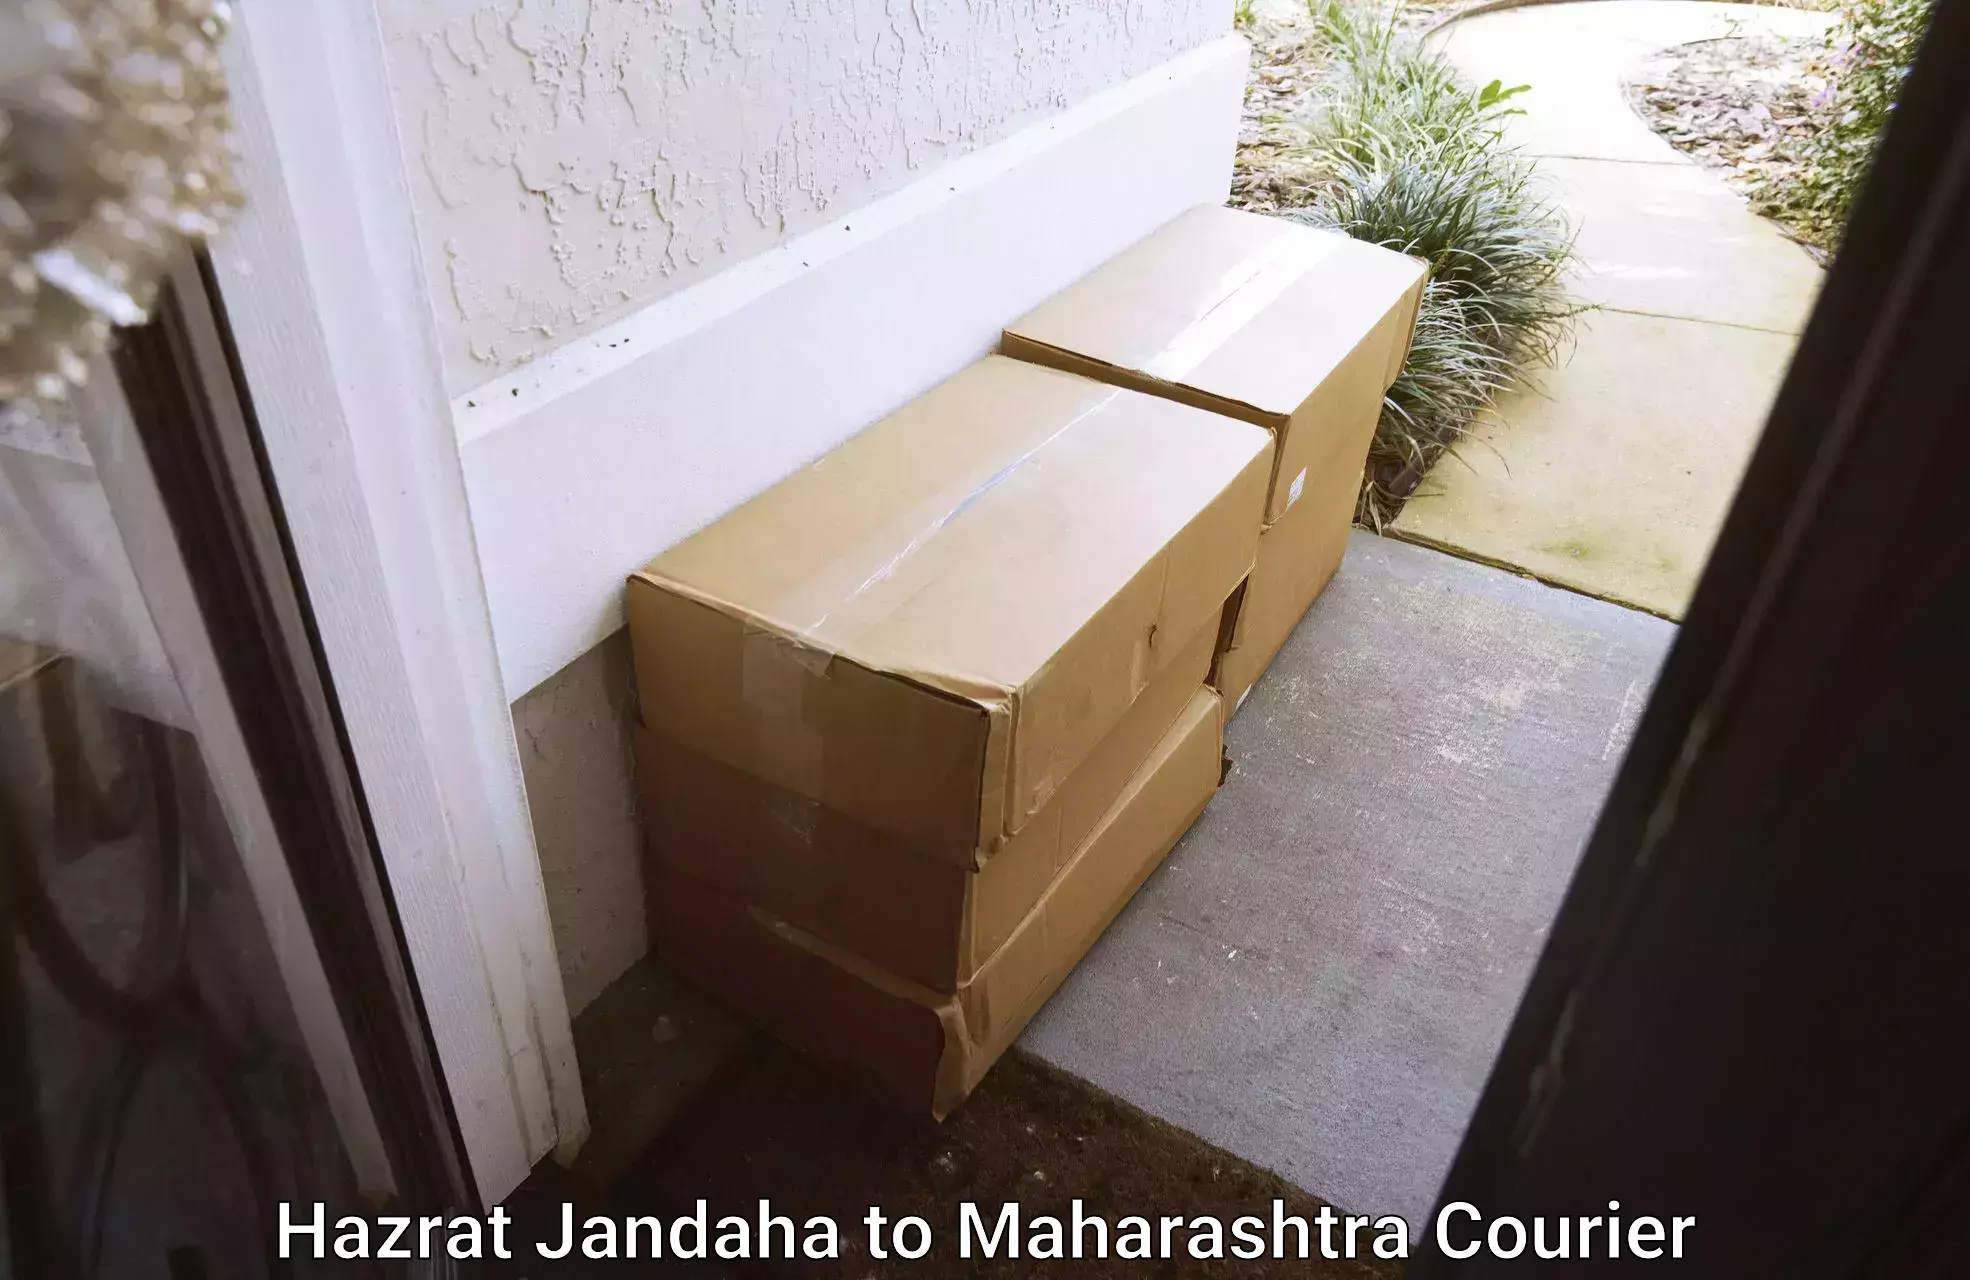 Moving and packing experts Hazrat Jandaha to Maharashtra